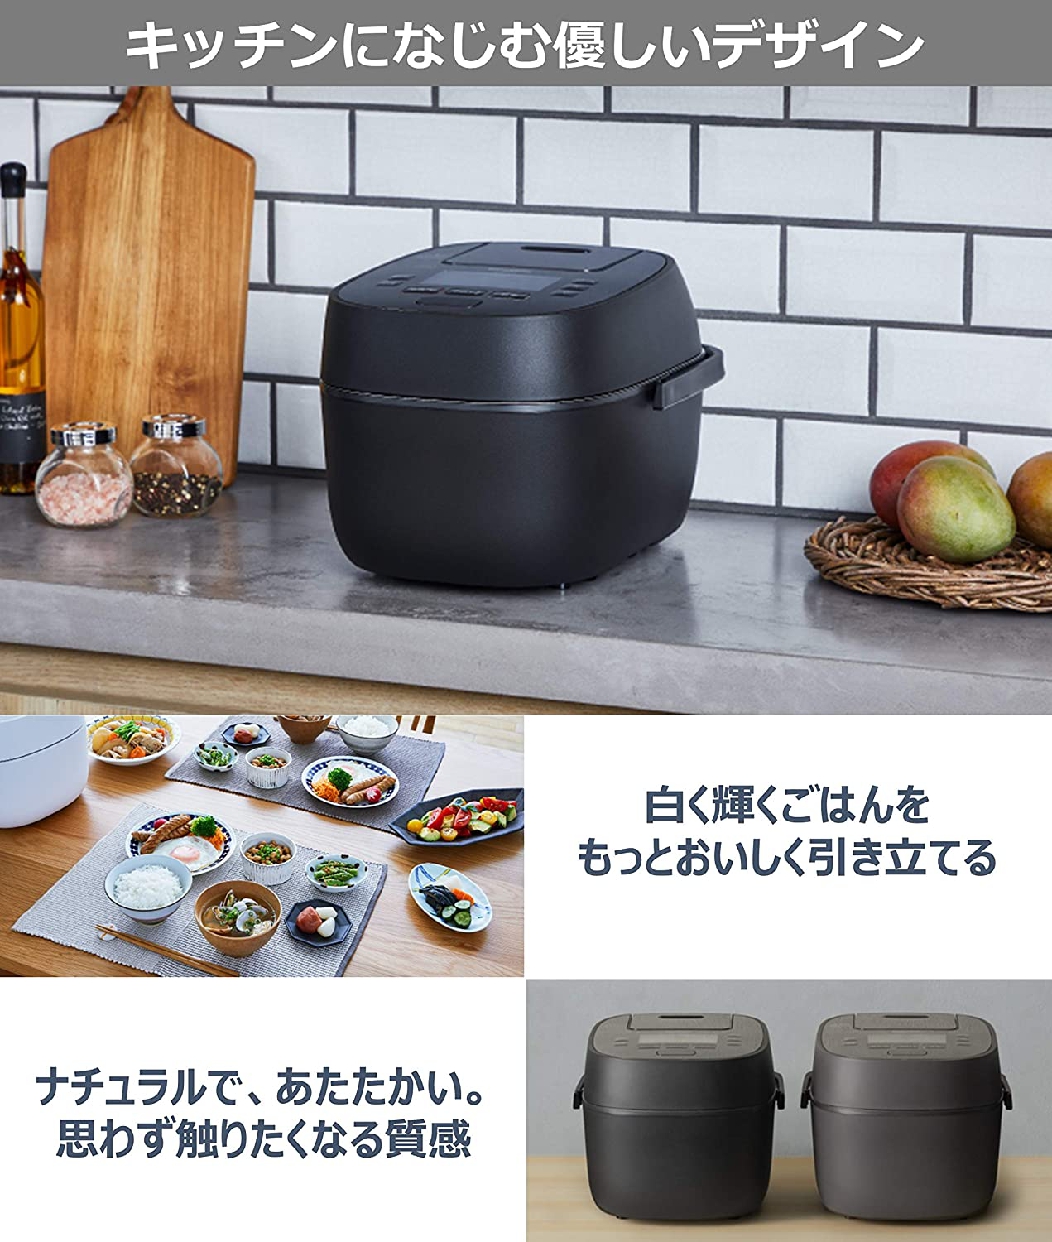 Panasonic(パナソニック) 可変圧力IHジャー炊飯器 SR-MPA100-K ブラックの商品画像サムネ6 